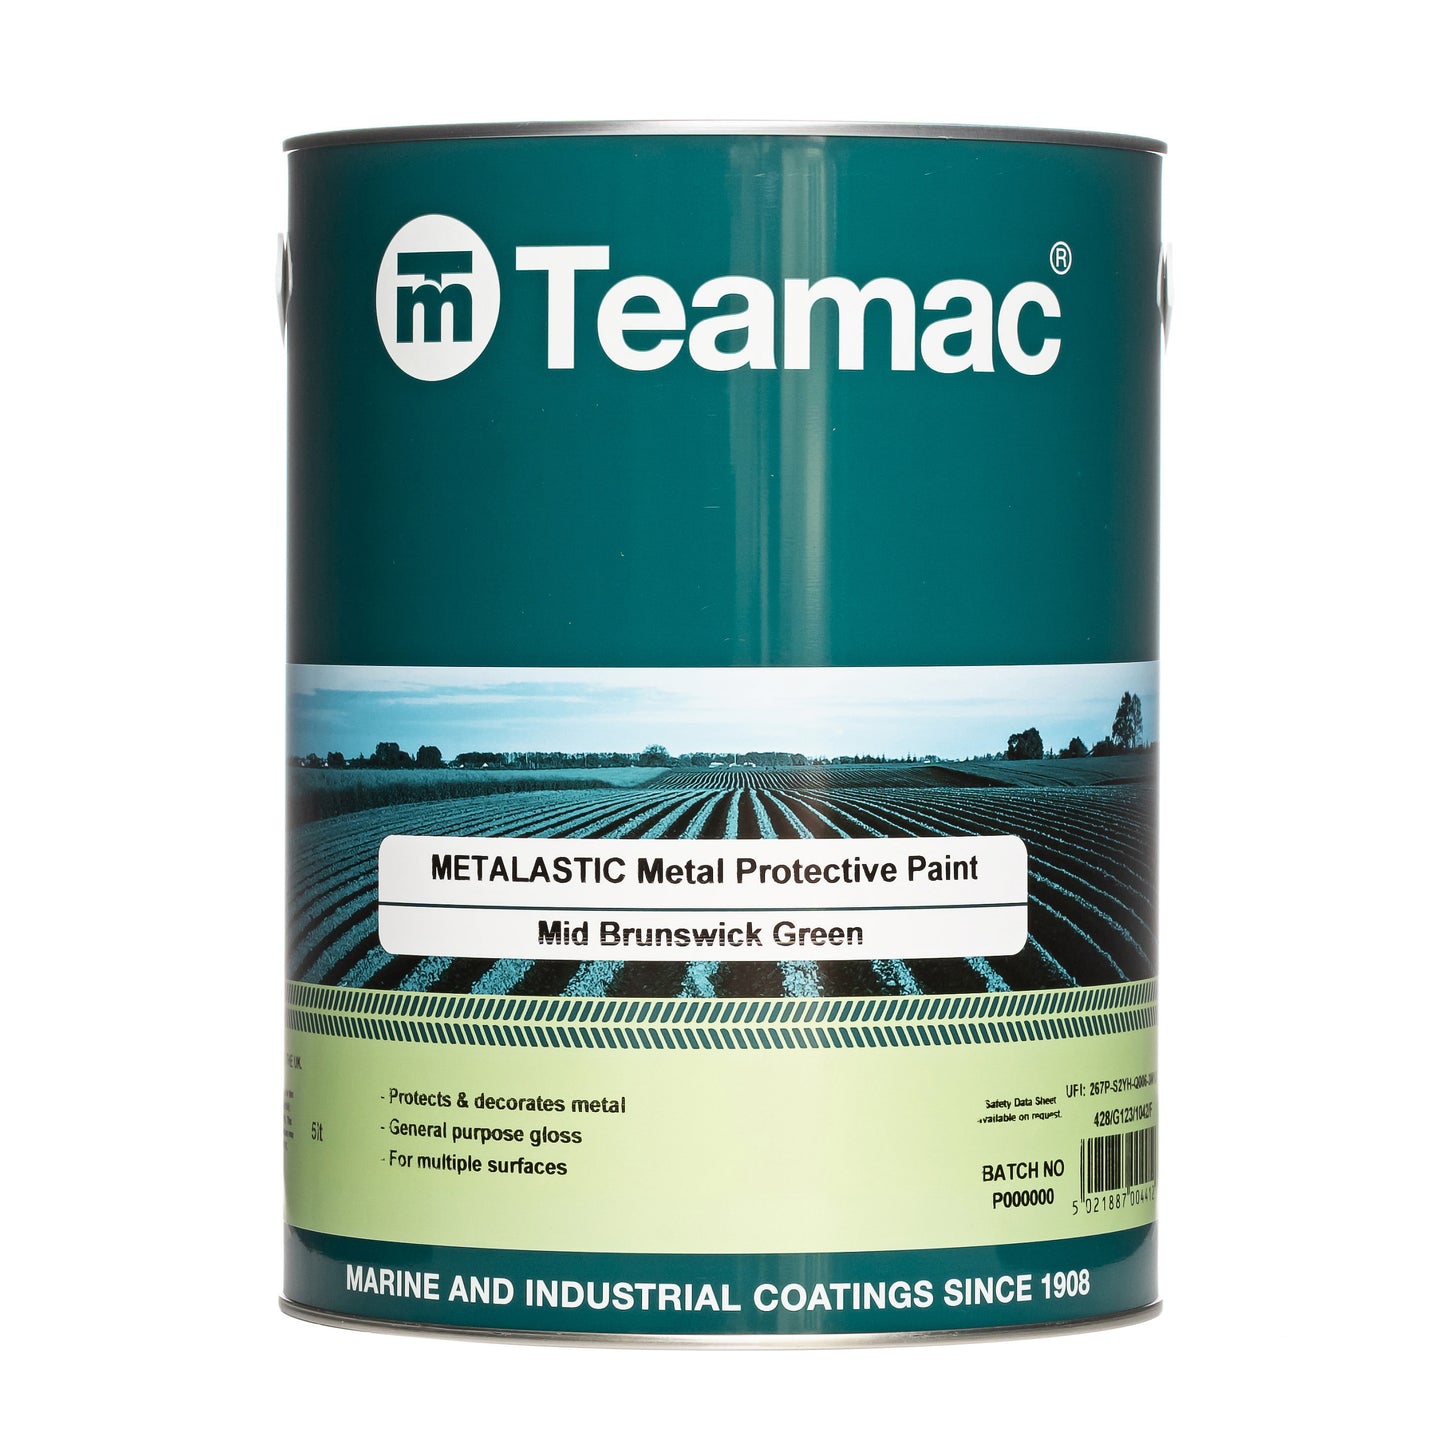 teamac-agri-metalastic-metal-protective-paint